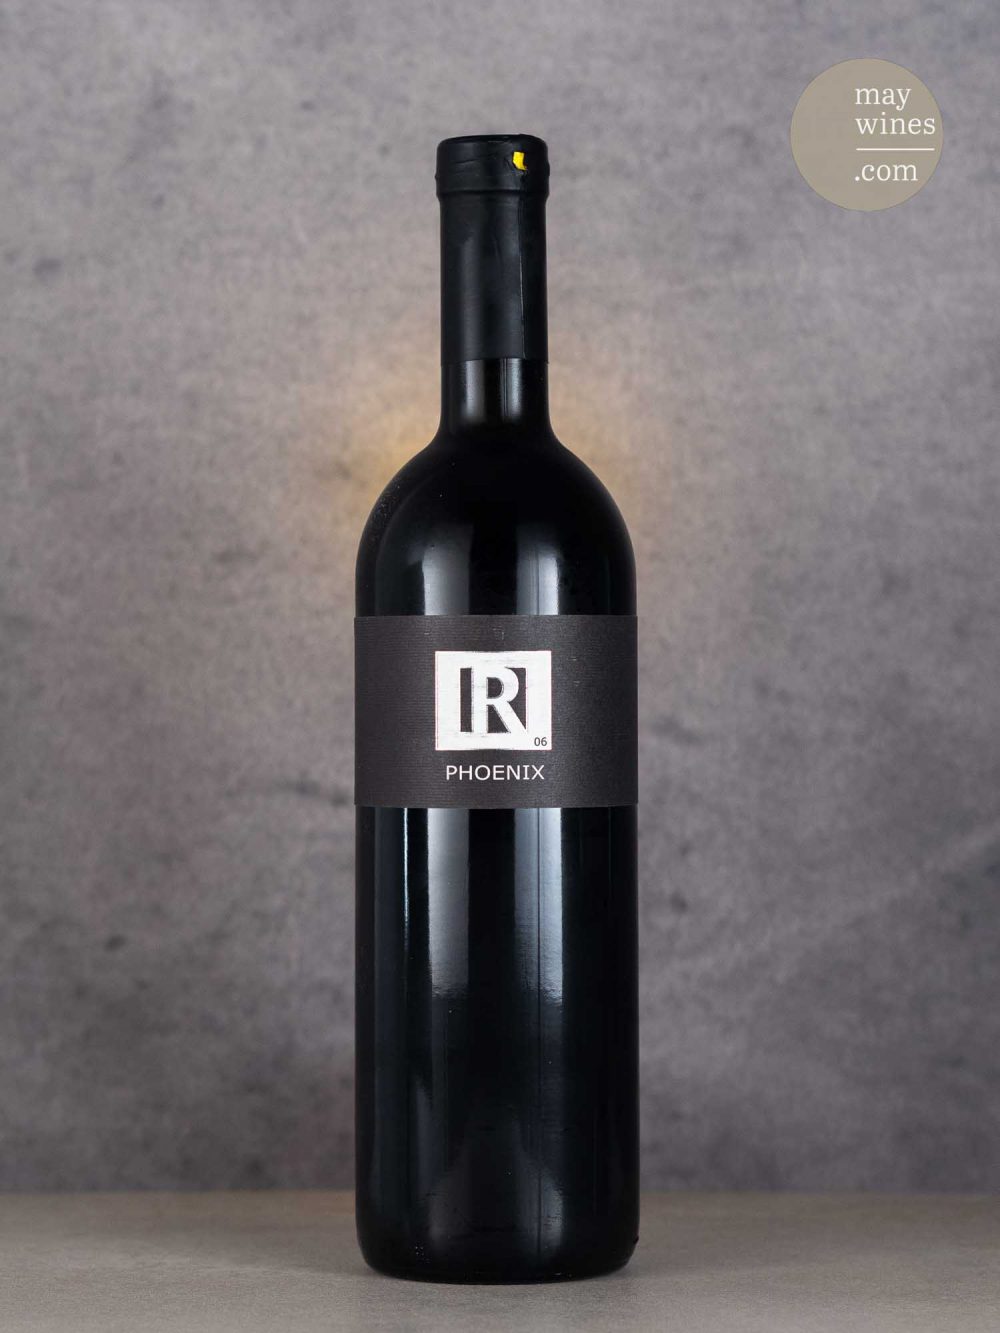 May Wines – Rotwein – 2006 Phoenix - Weingut Reumann